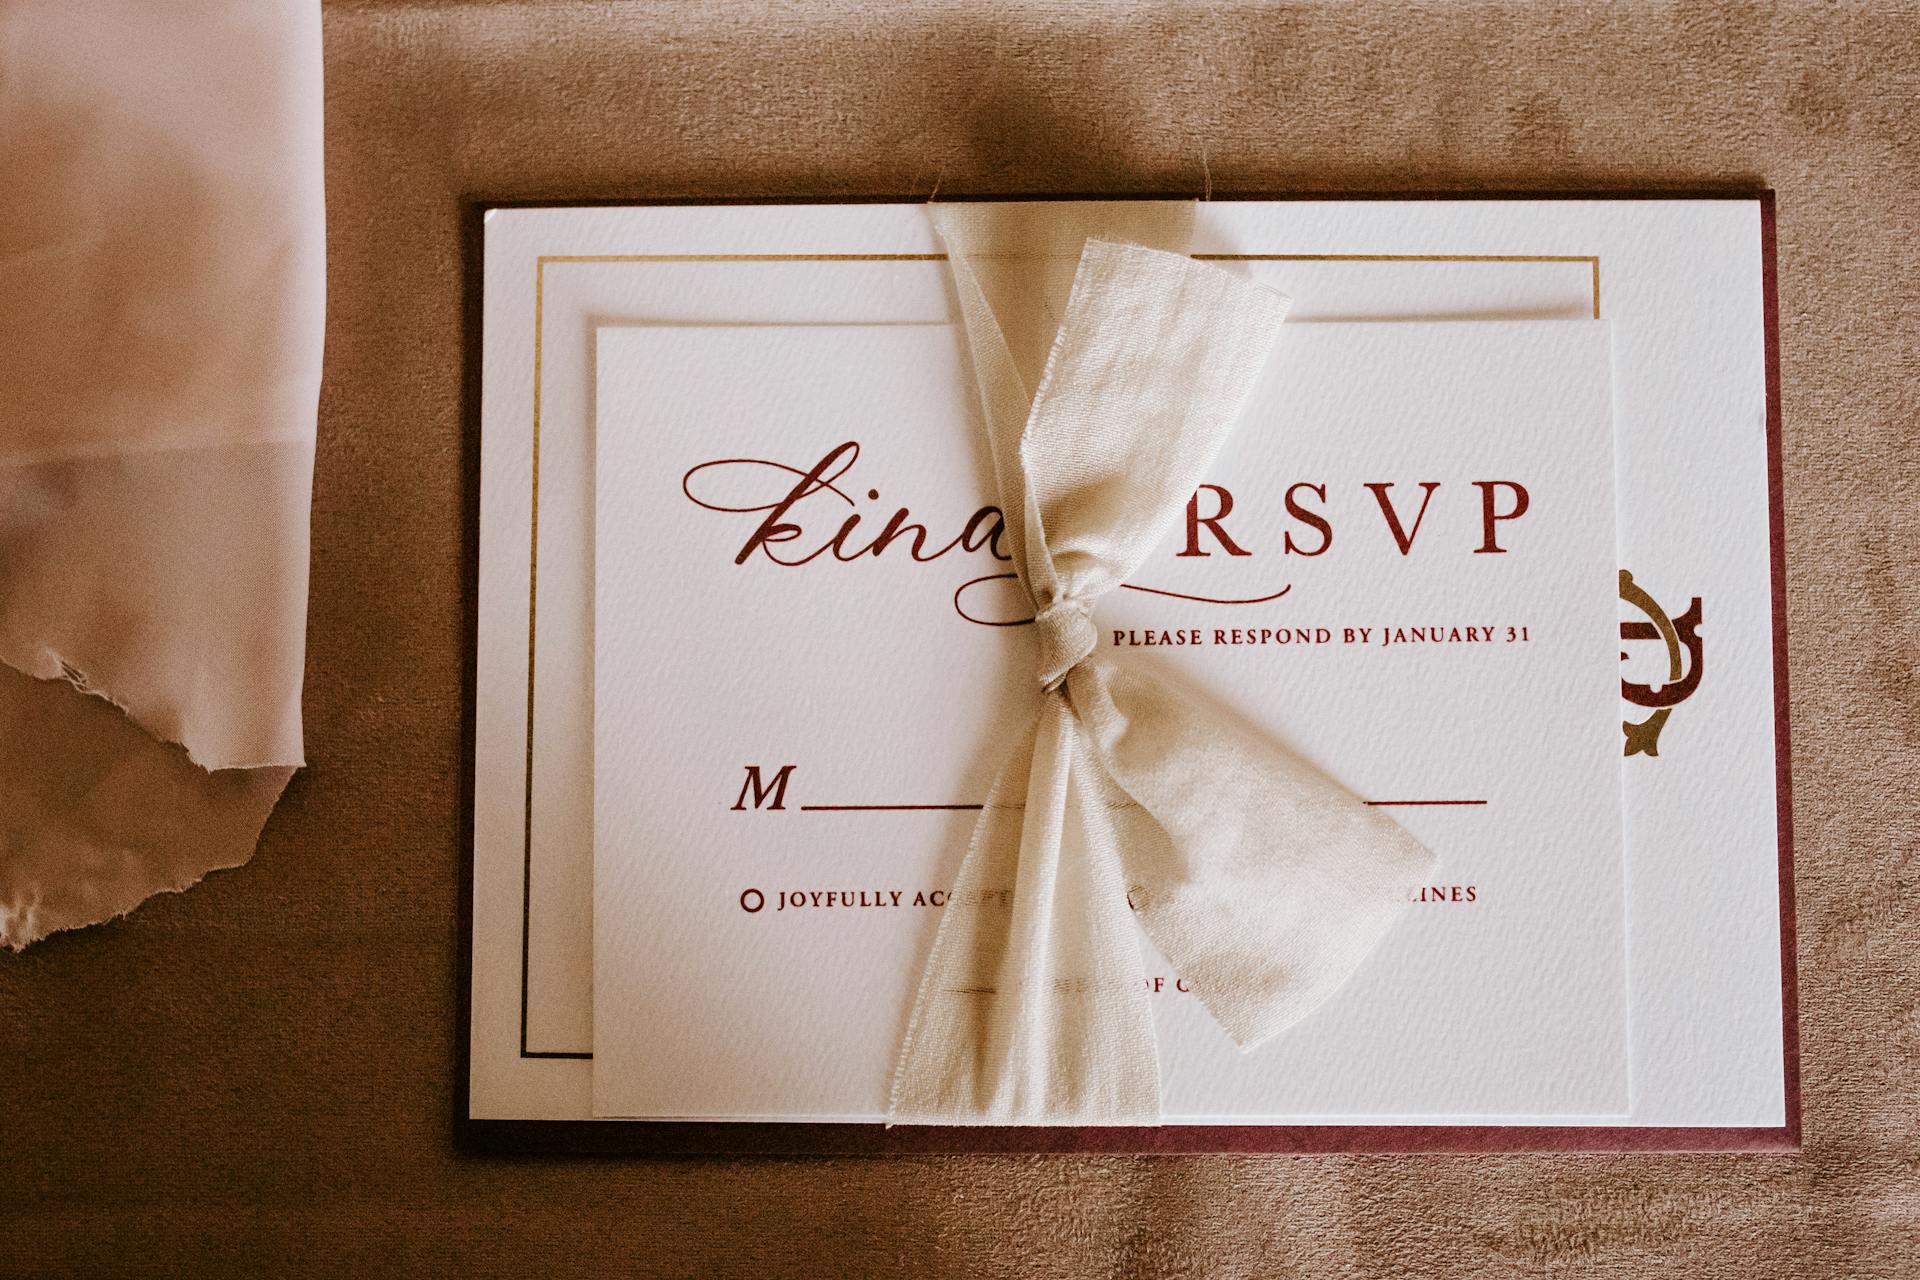 Une invitation de mariage et une carte RSVP | Source : Pexels